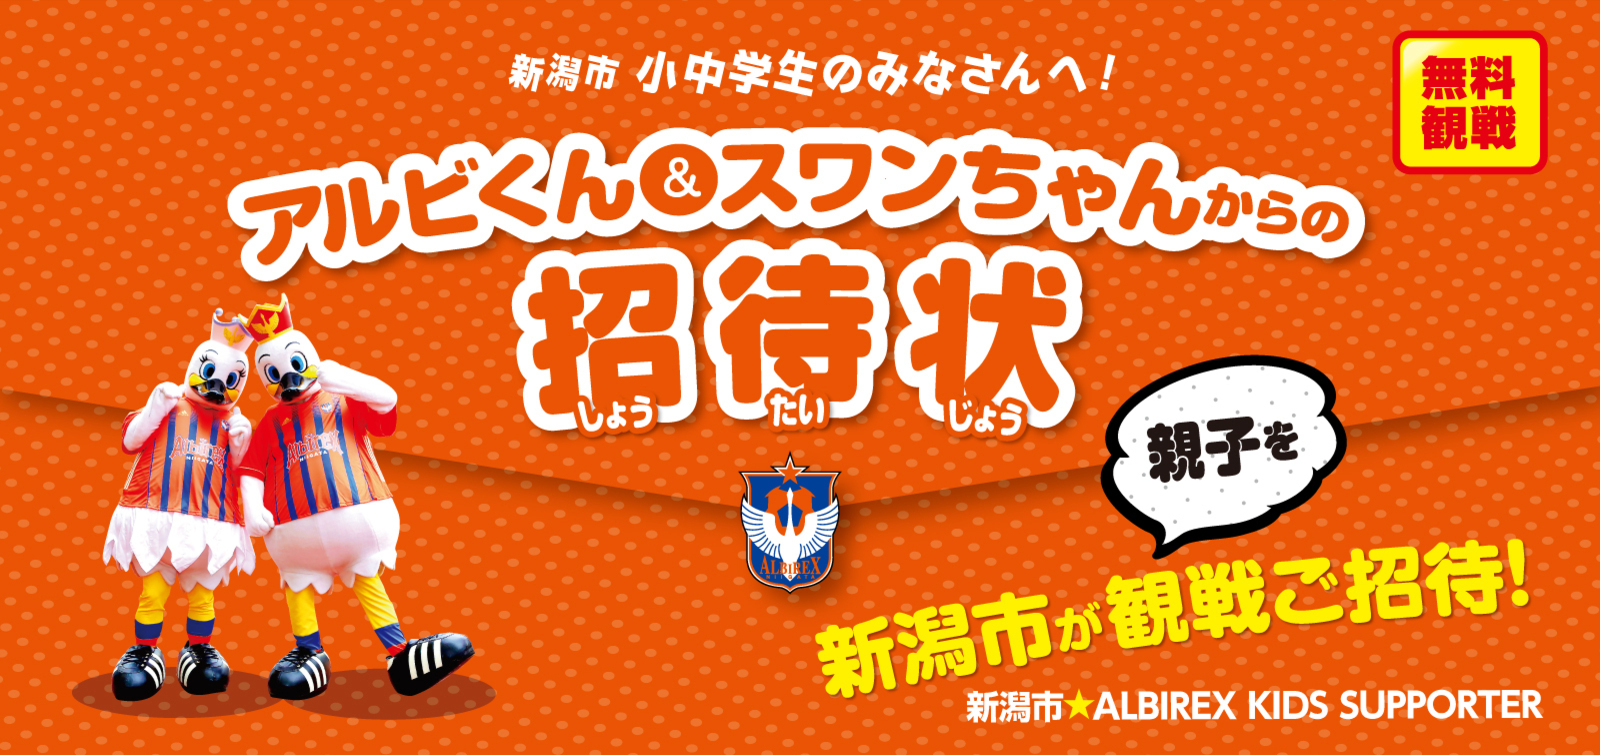 アルビレックス新潟 公式サイト Albirex Niigata Official Website